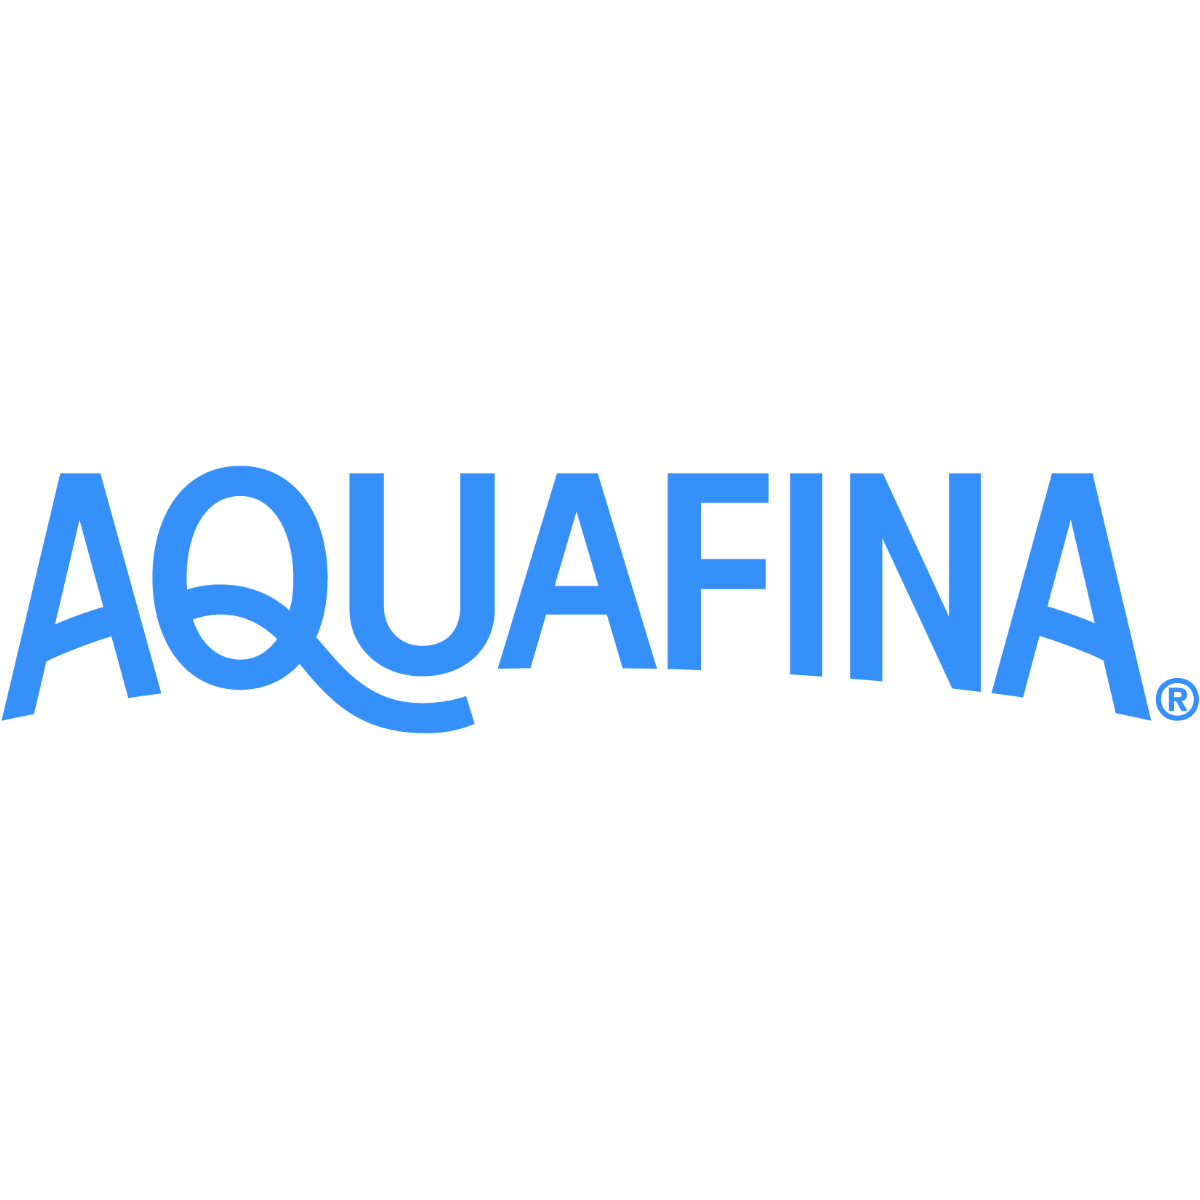 Aquafina Logo Transparent Picture